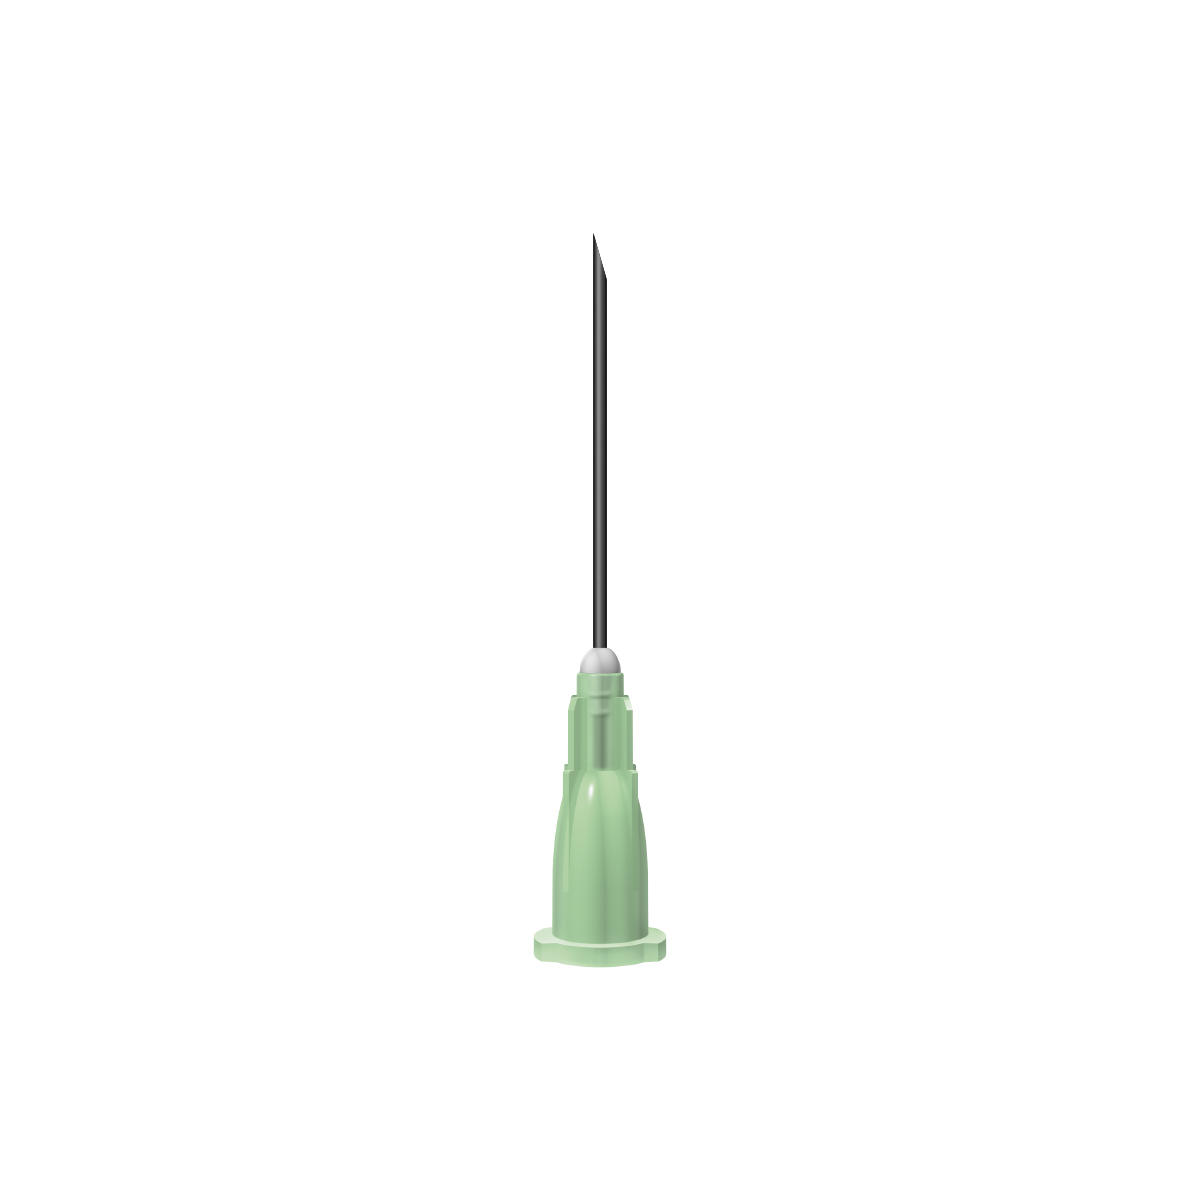 Unisharp: Green 21G 25mm (1 inch) needle